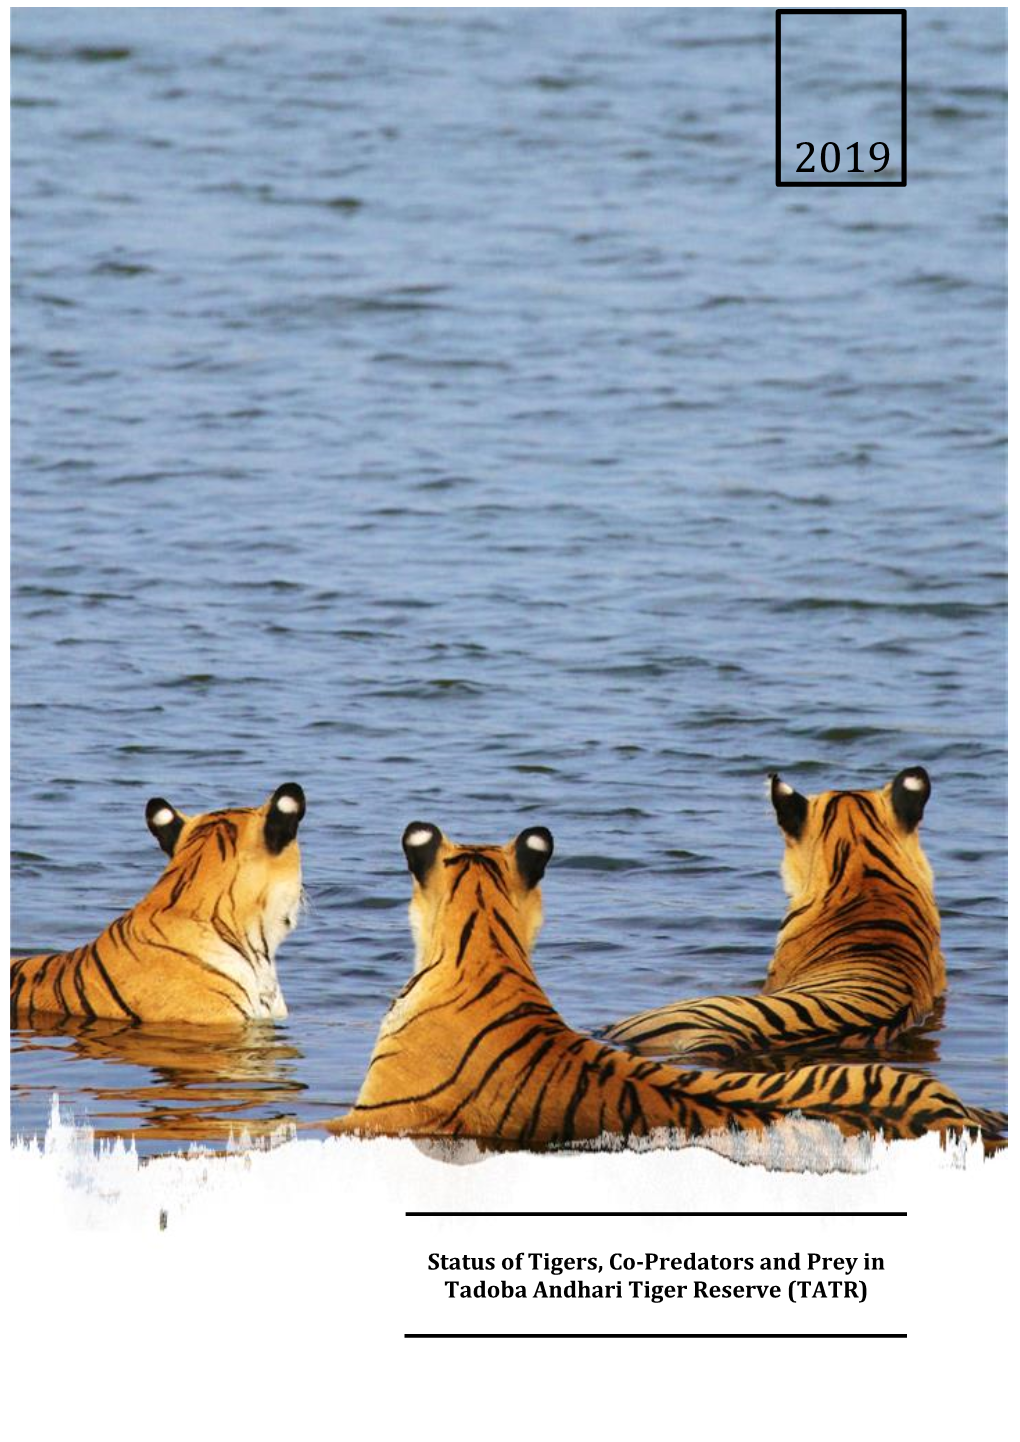 Status of Tigers, Co-Predators and Prey in Tadoba Andhari Tiger Reserve (TATR)